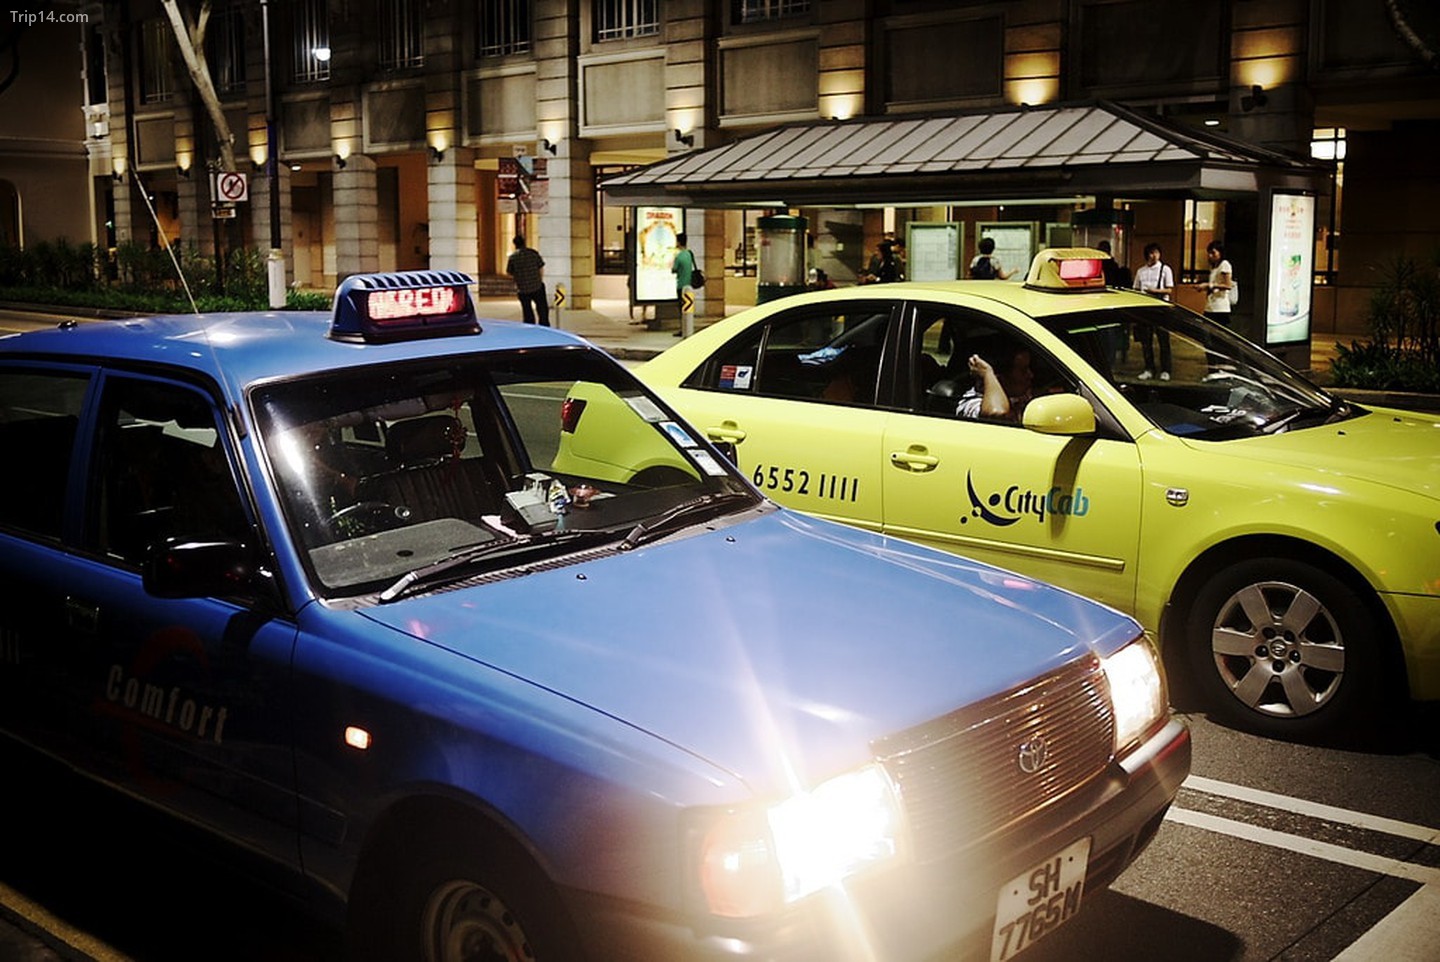 Taxi ở Singapore được kiểm tra và quản lý